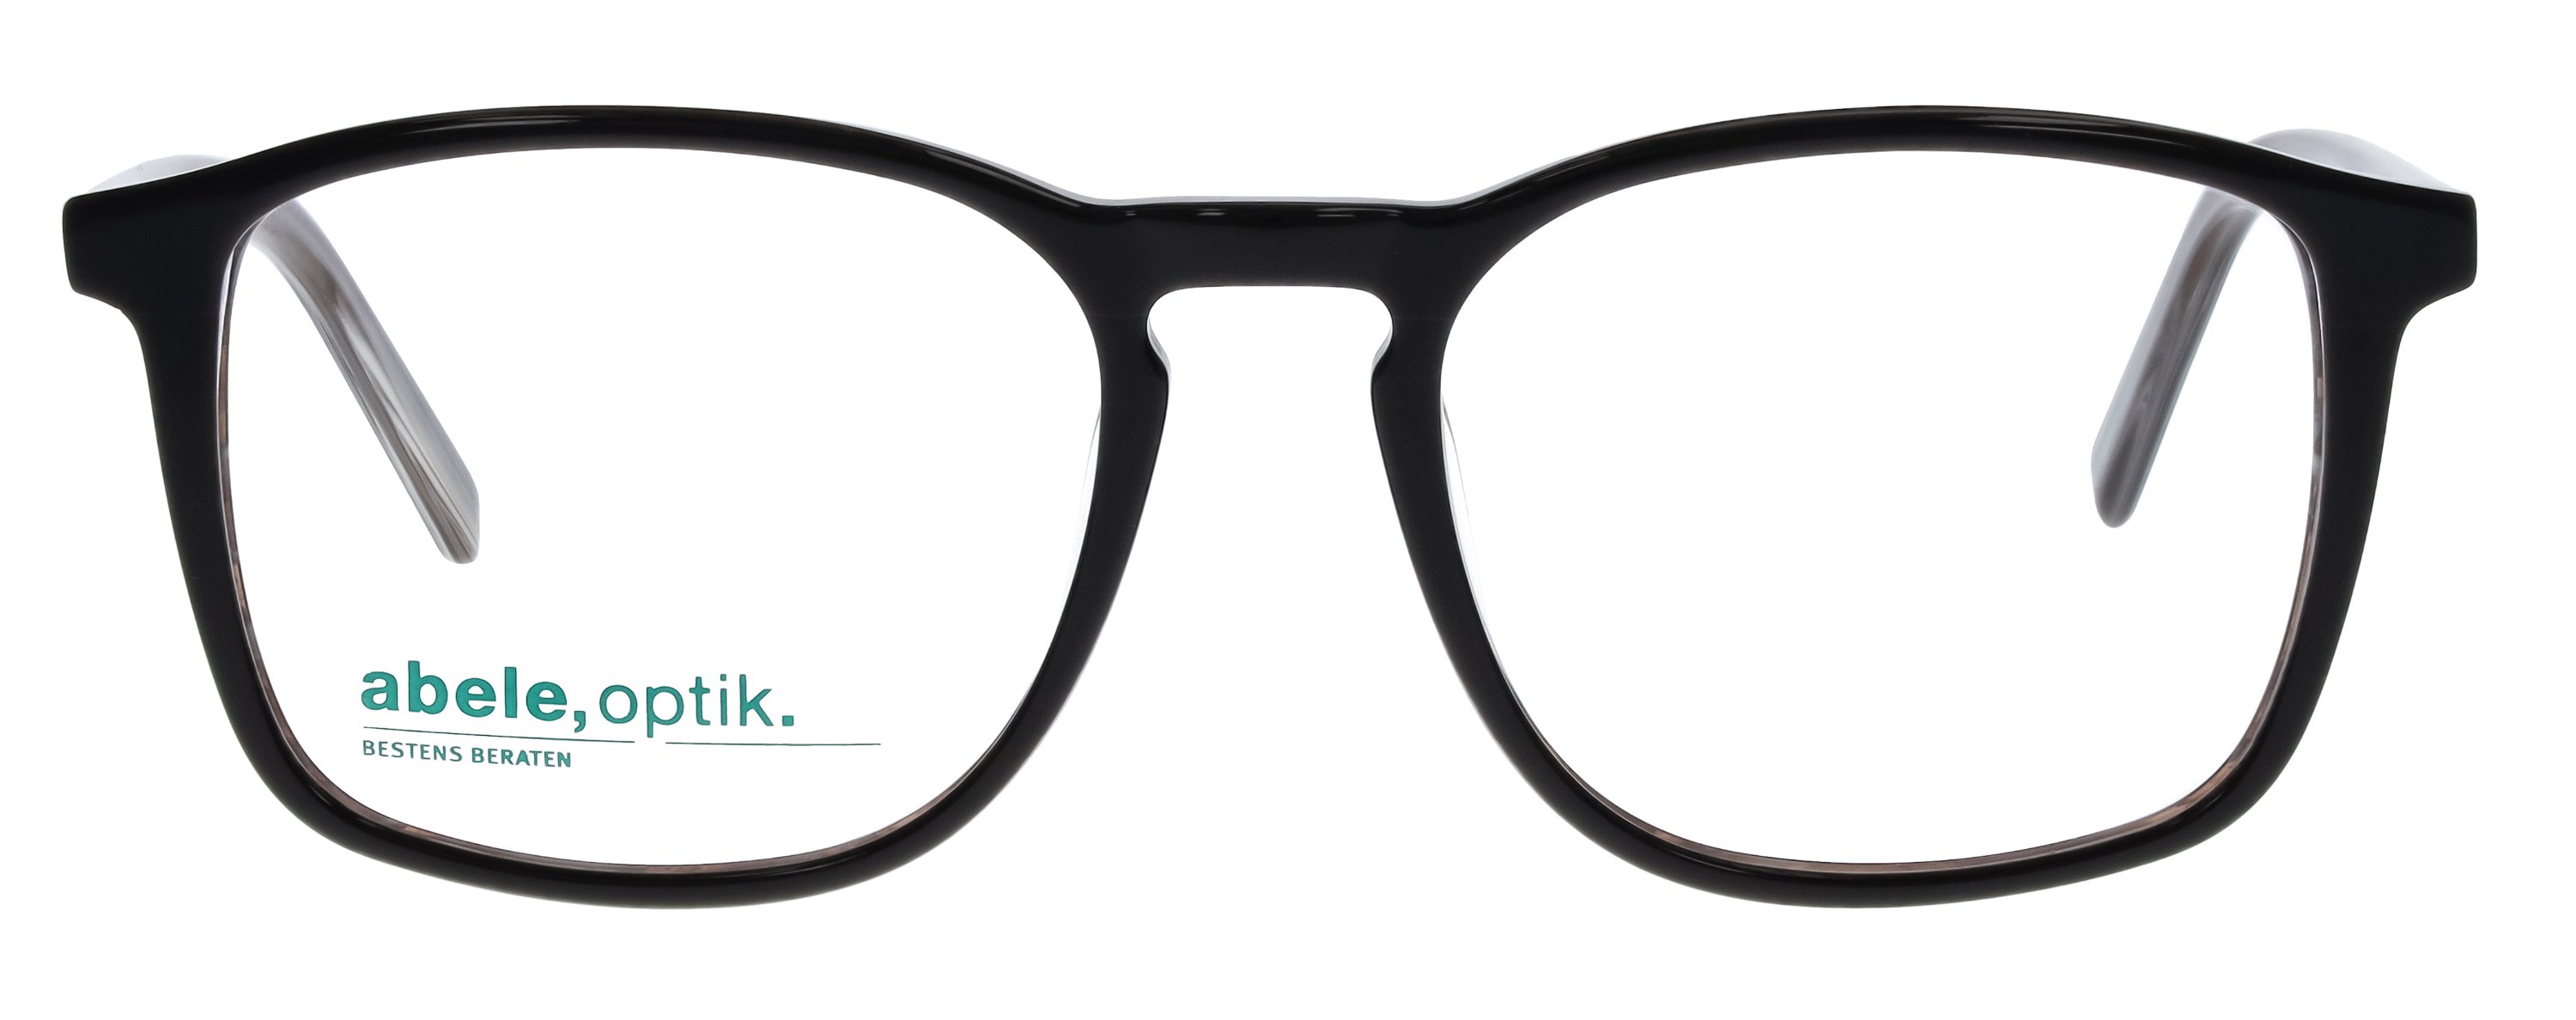 Das Bild zeigt die Korrektionsbrille 148921 von der Marke Abele Optik in dunkelbraun.